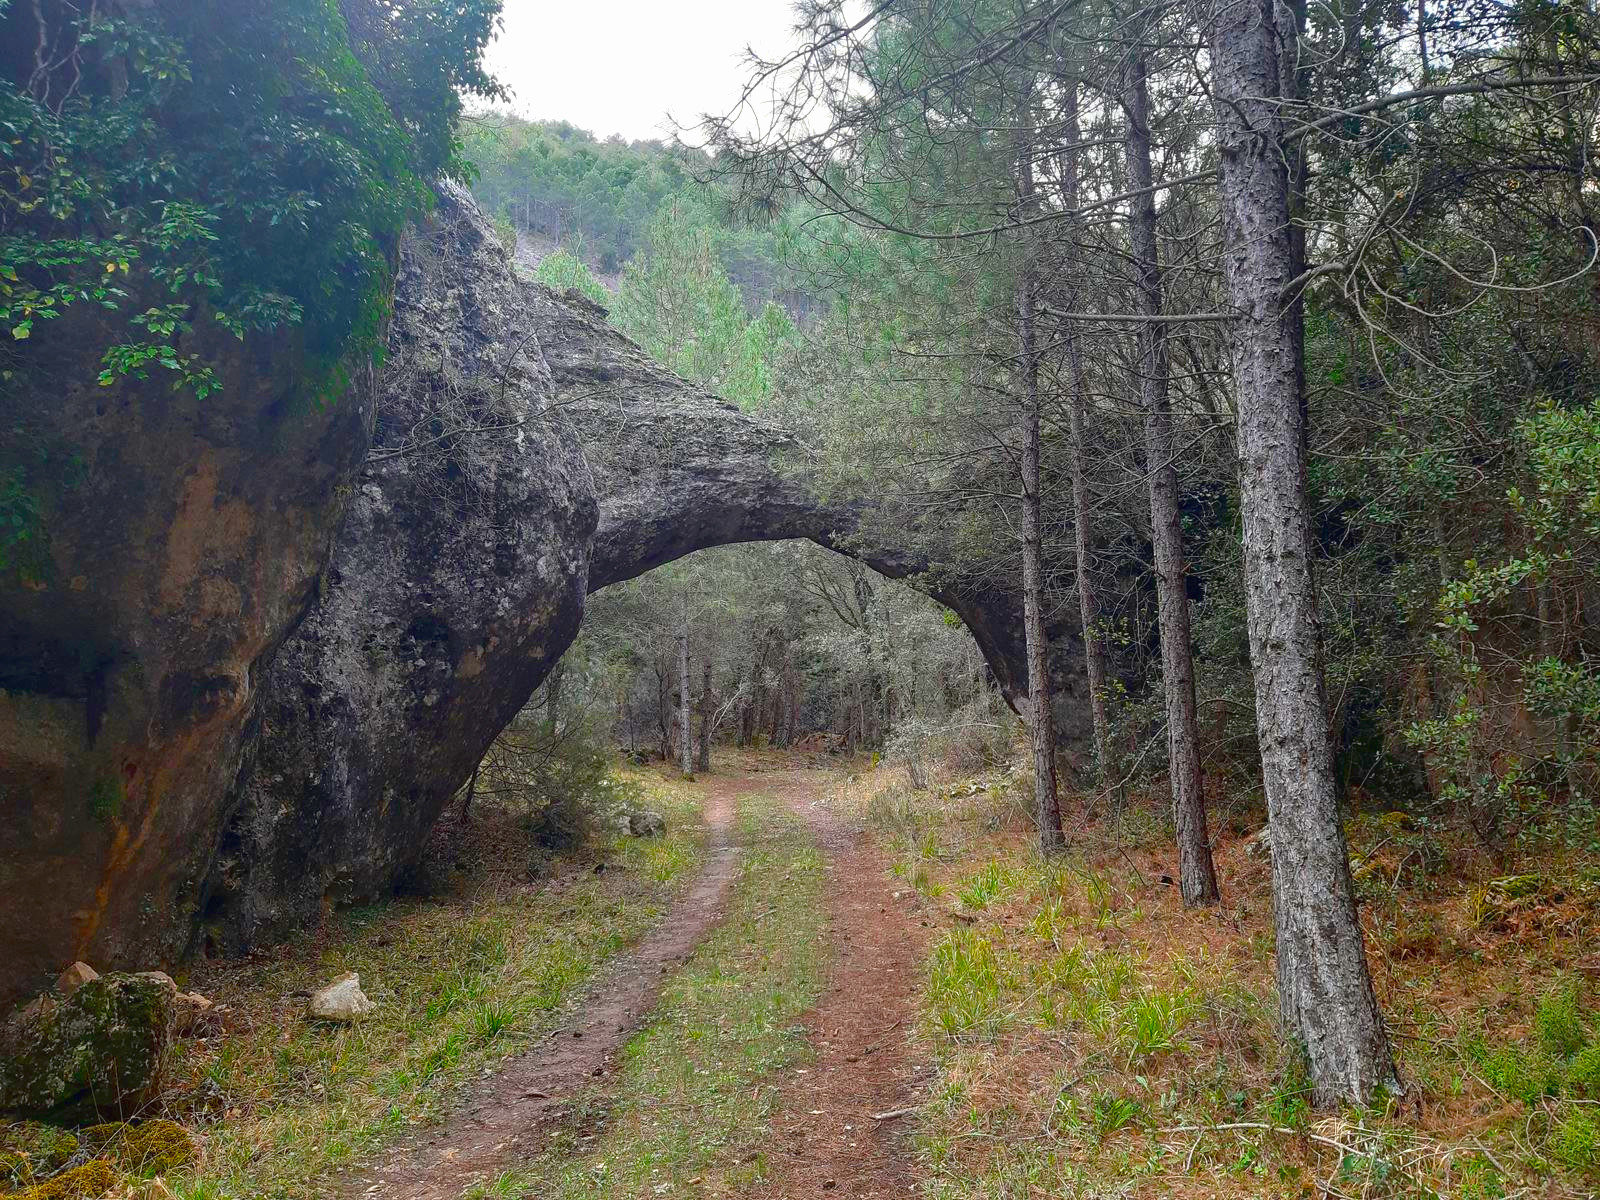 Rambla del Avellano path